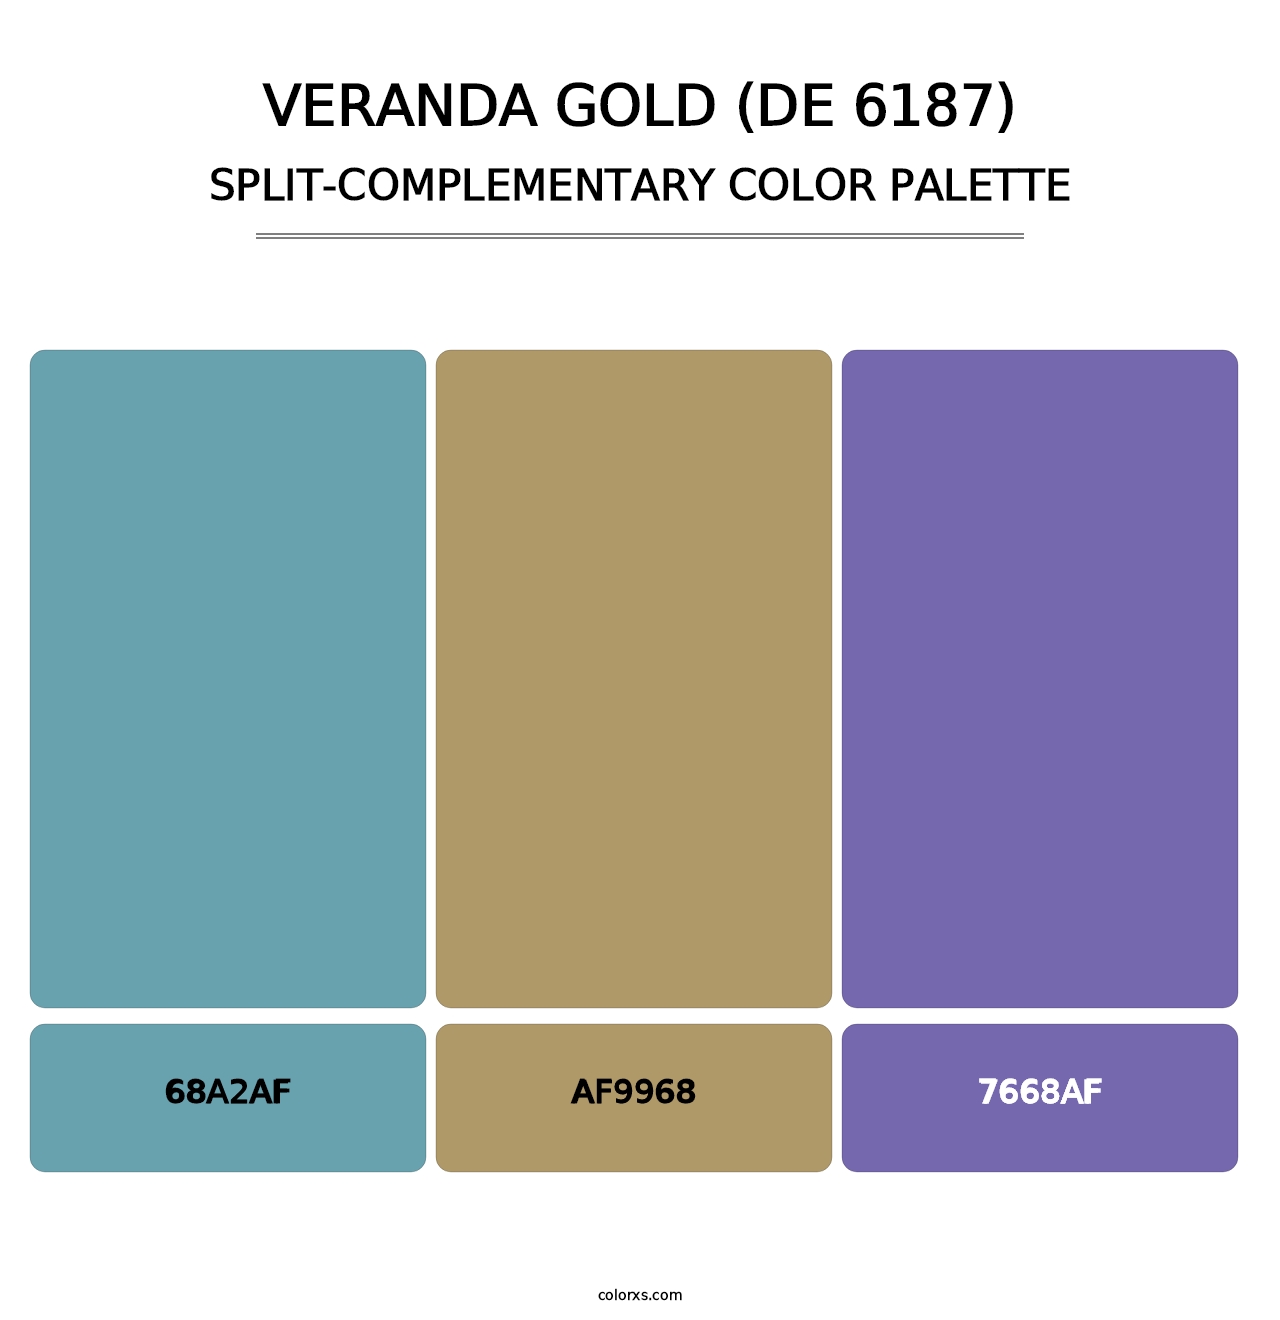 Veranda Gold (DE 6187) - Split-Complementary Color Palette